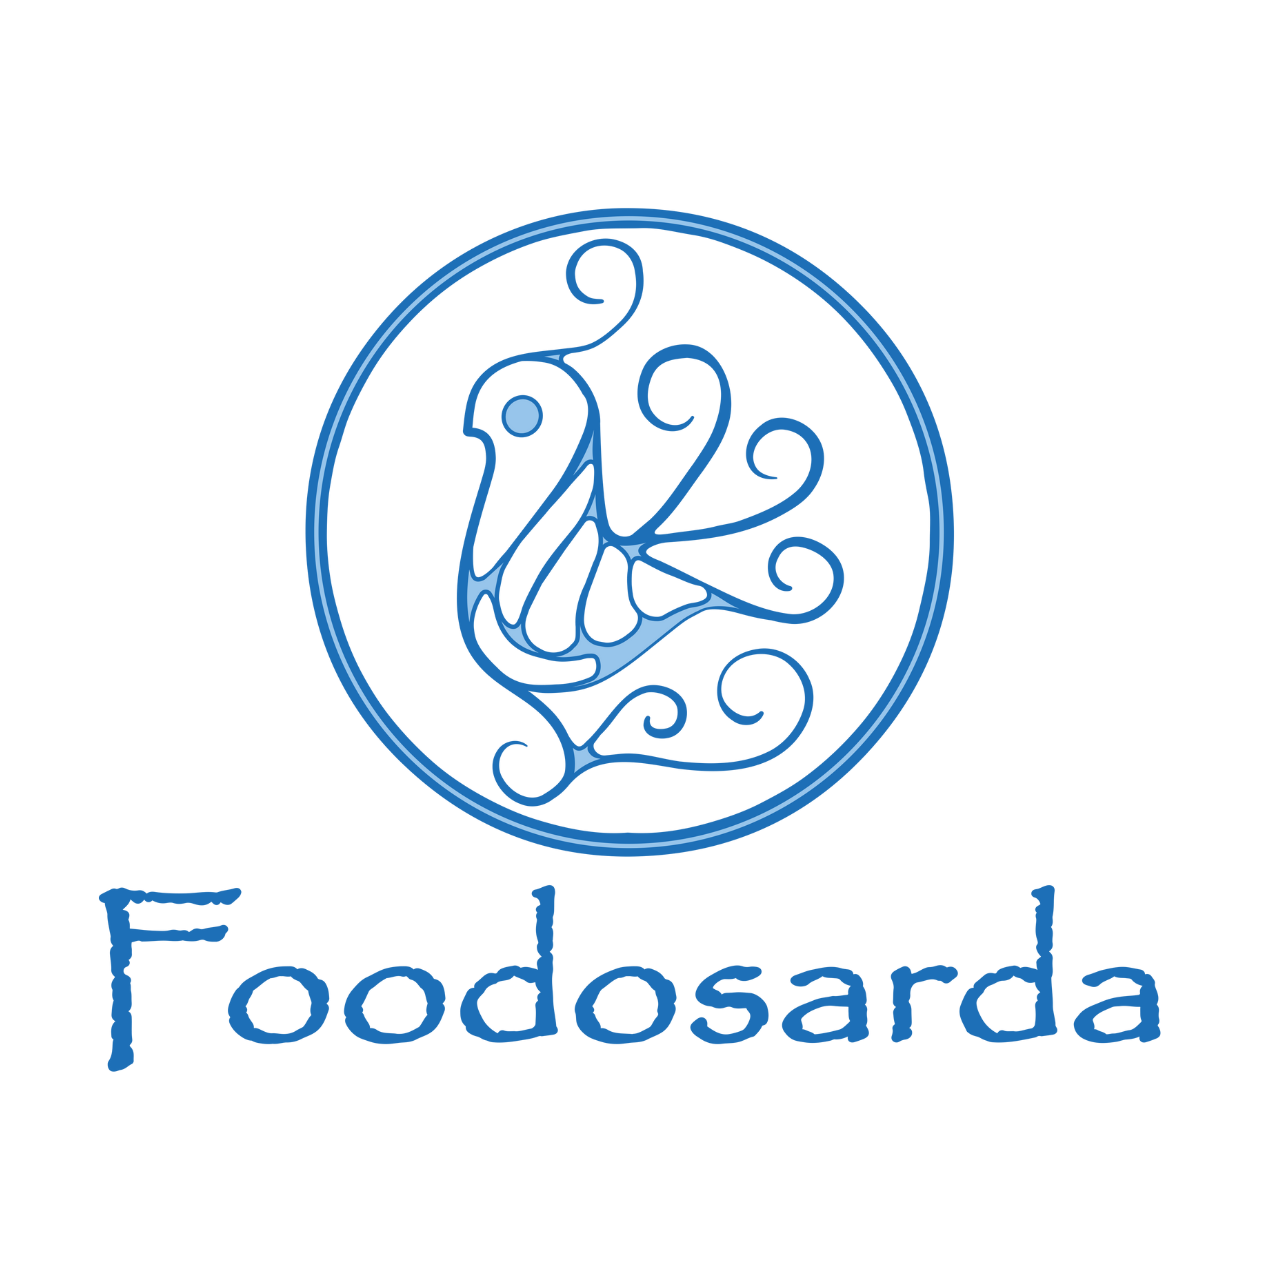 Foodosarda